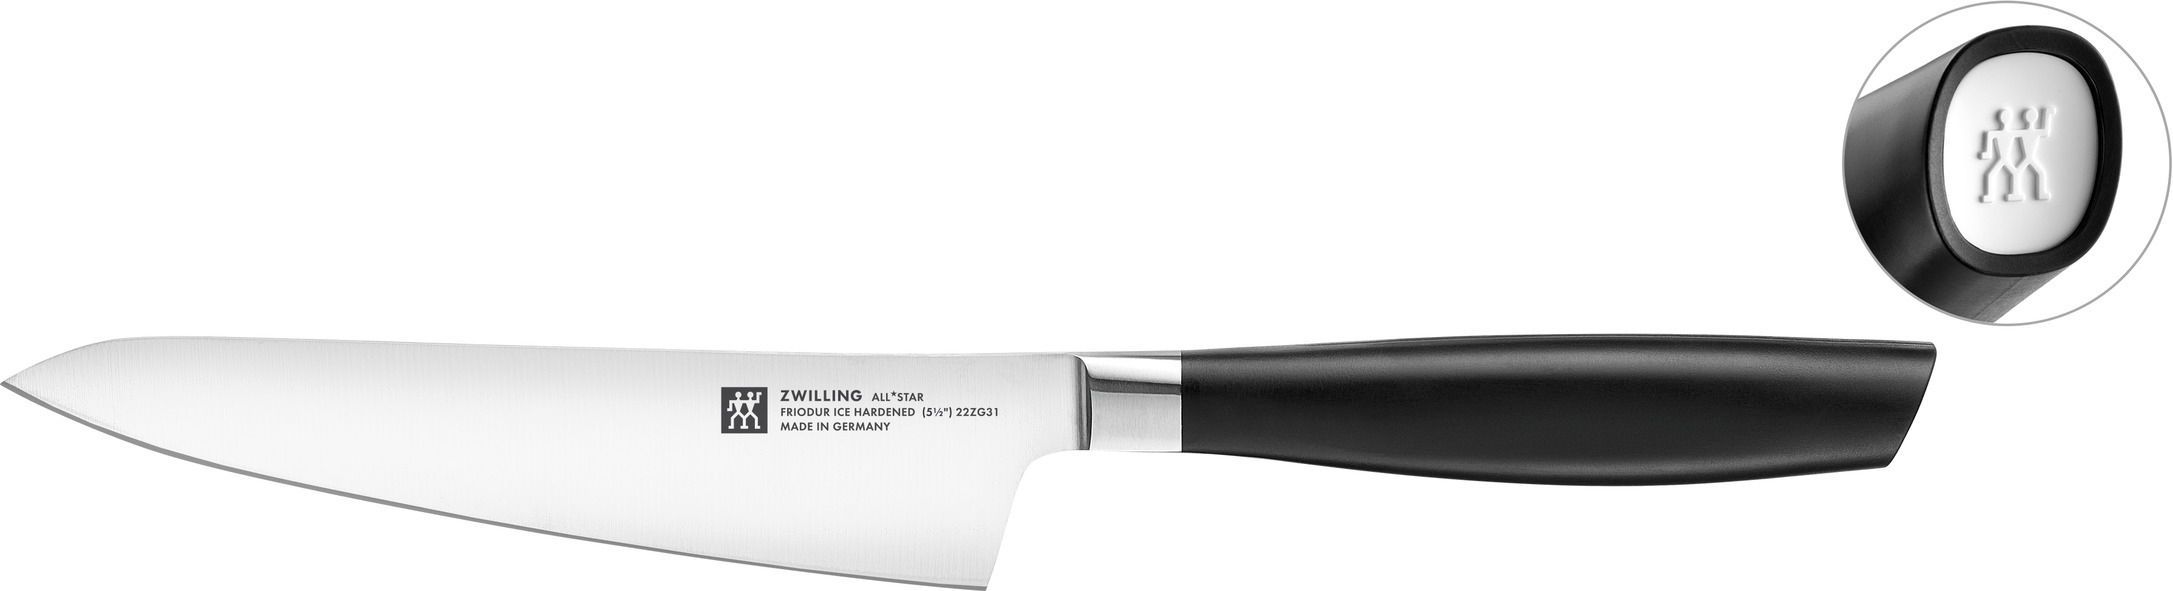 Zwilling Kompaktný kuchársky nôž All* Star, 14 cm, biele logo 1022787